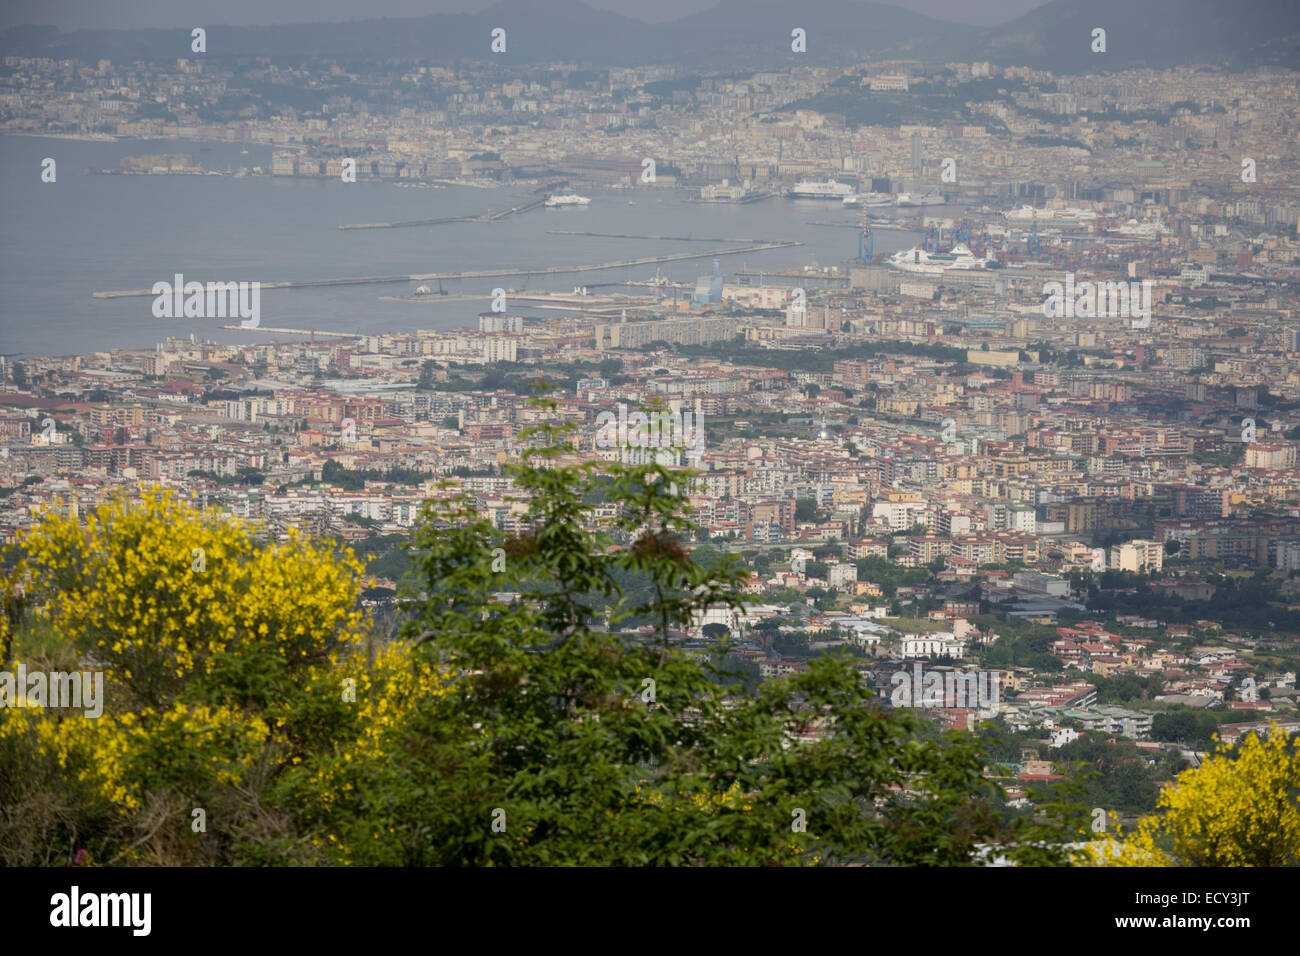 Die Bucht von Neapel (3,5 Mio. Einwohner) gesehen von den südwestlichen Hängen des Vulkans Vesuv, zuletzt im Jahre 1945 ausbrach. Stockfoto